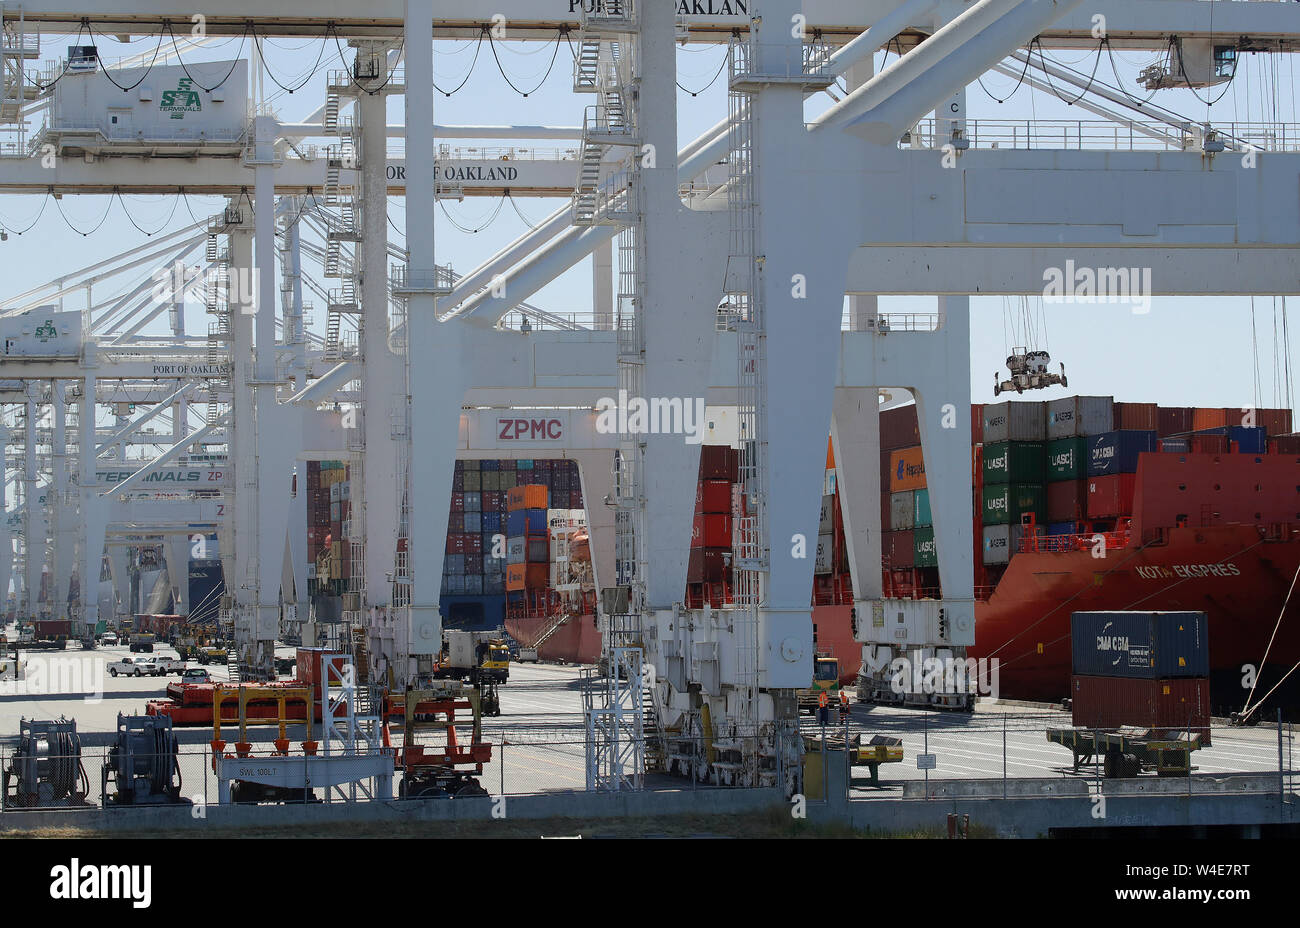 Das containerschiff Kota Ekspres ist im Hafen von Oakland, Oakland, Kalifornien USA entladen. Stockfoto